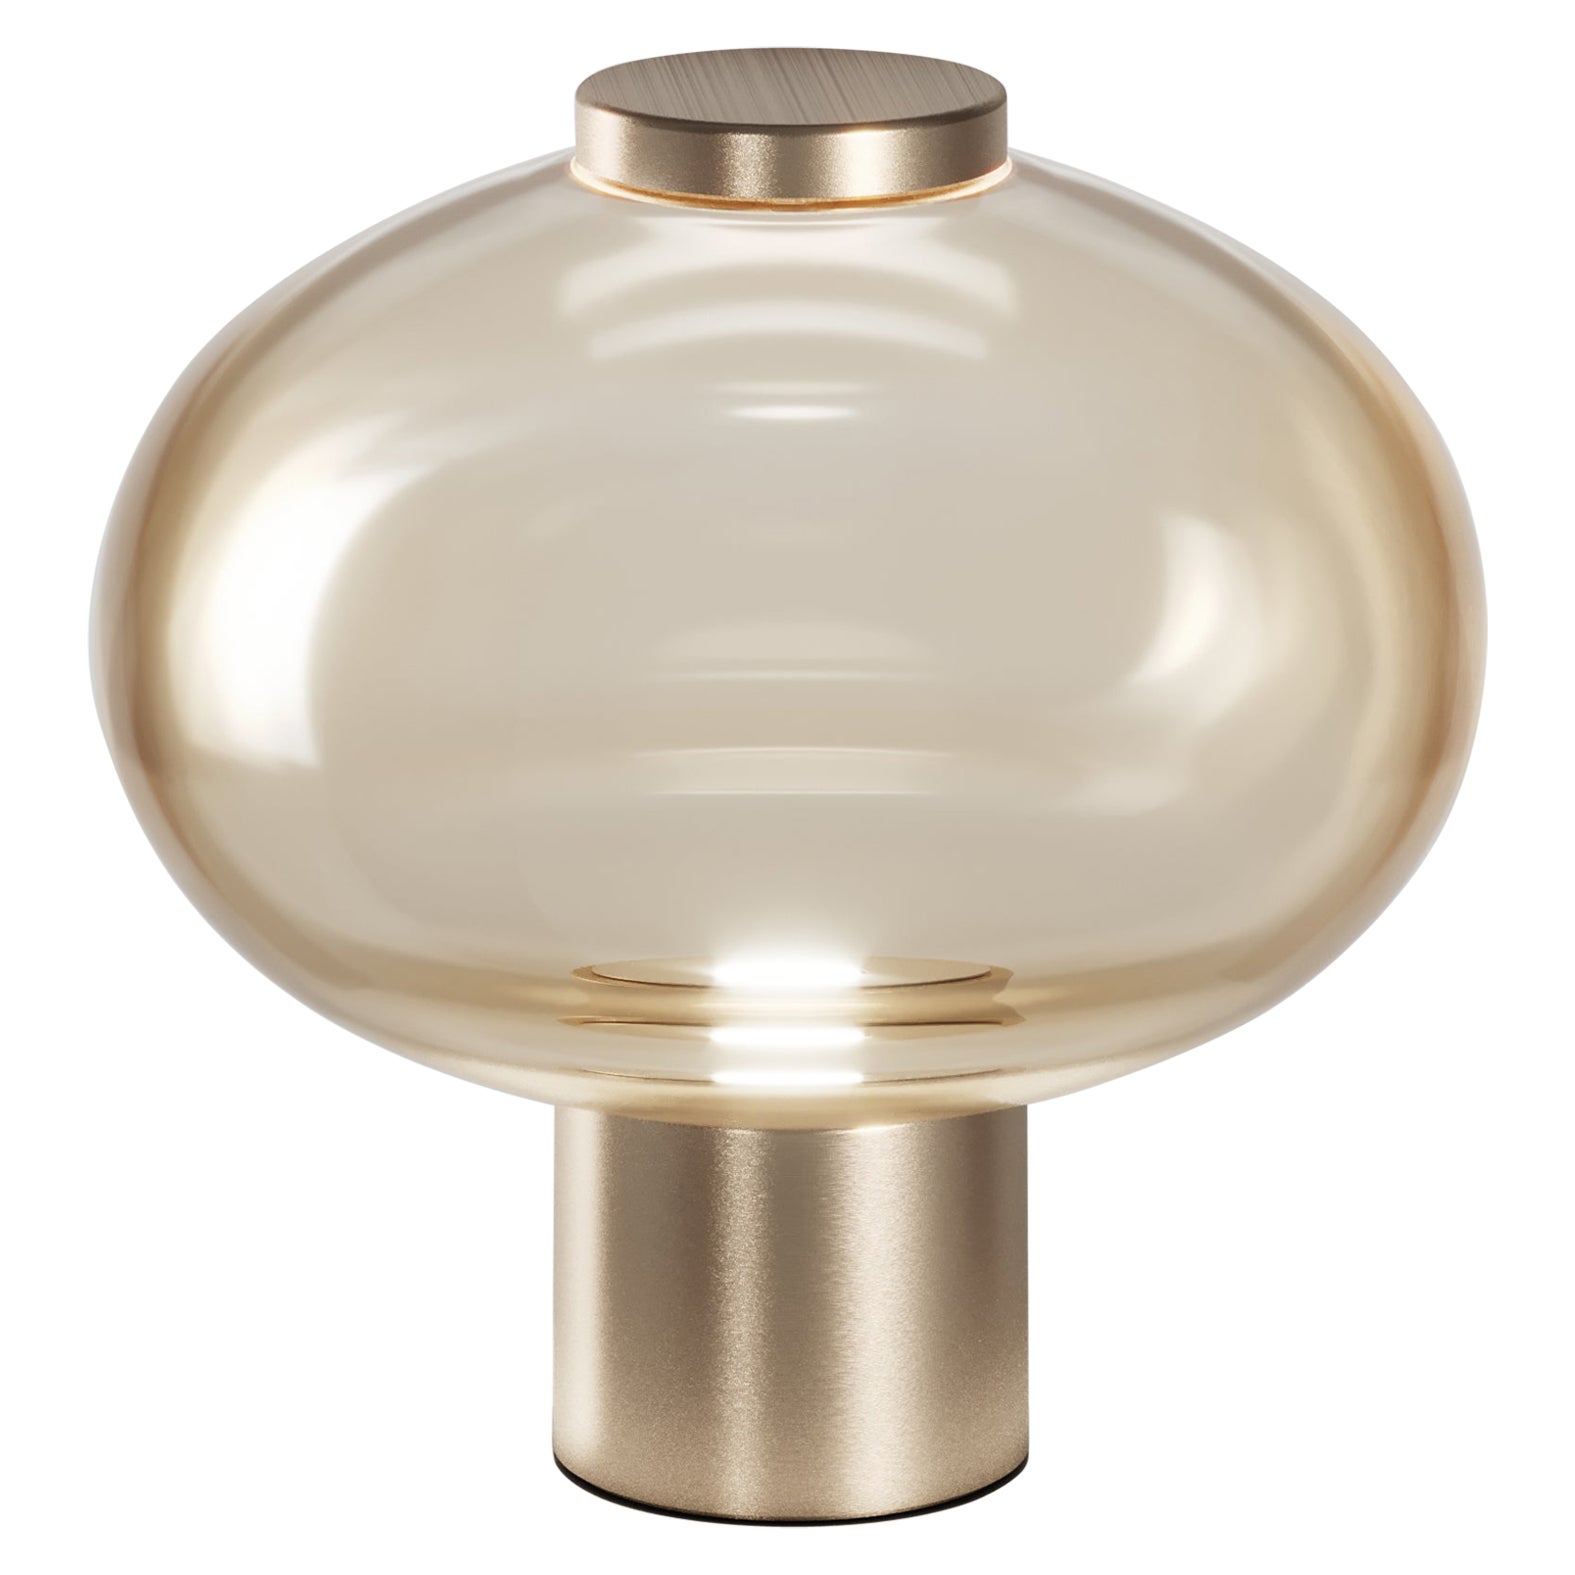 Vistosi Riflesso Tischlampe aus bernsteinfarbenem, durchscheinendem Glas und mattem Goldrahmen